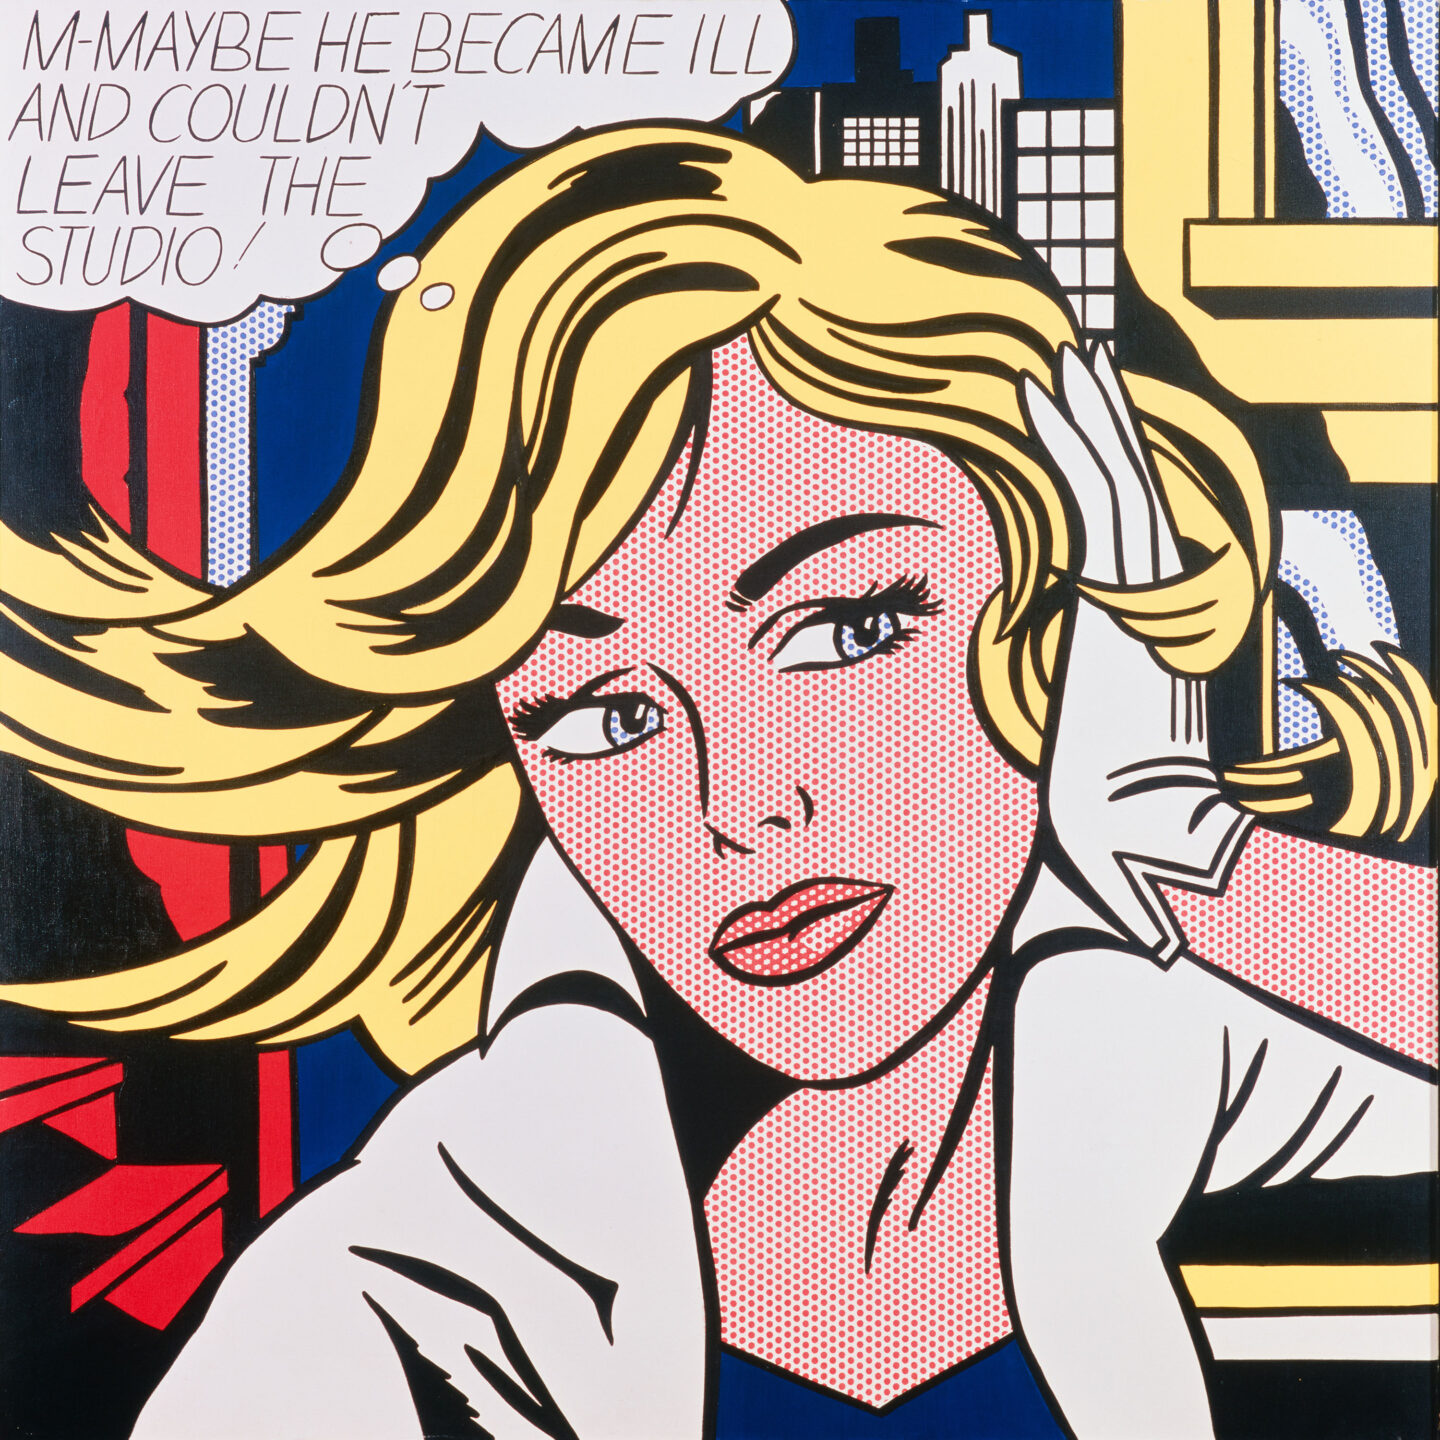 Roy Lichtenstein: Ein Meister der Pop Art , maybe, blonde Frau mit Sprechblase, Comic, Rasterpunkte